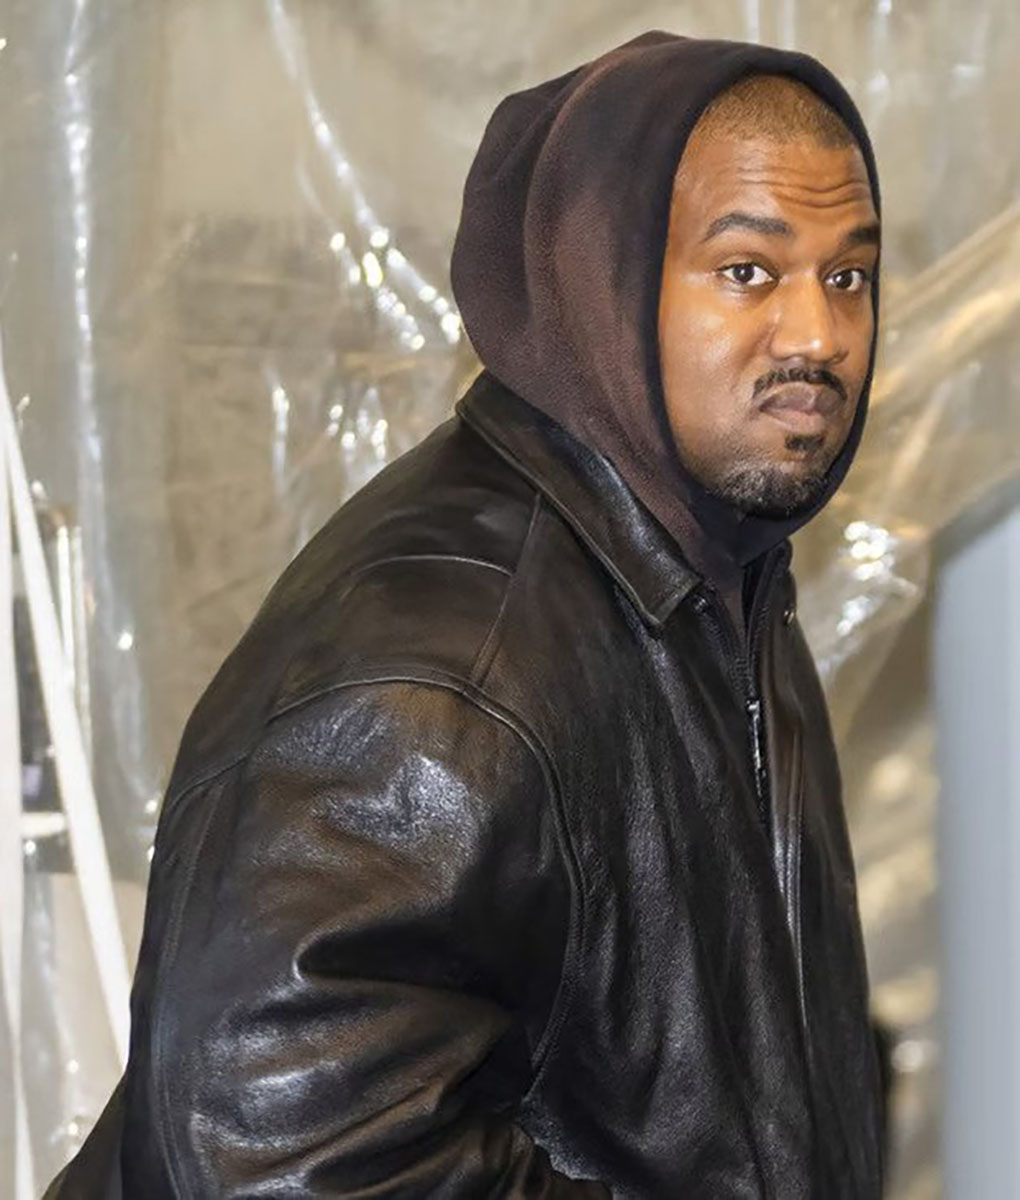 Kanye Black Leather Jacket